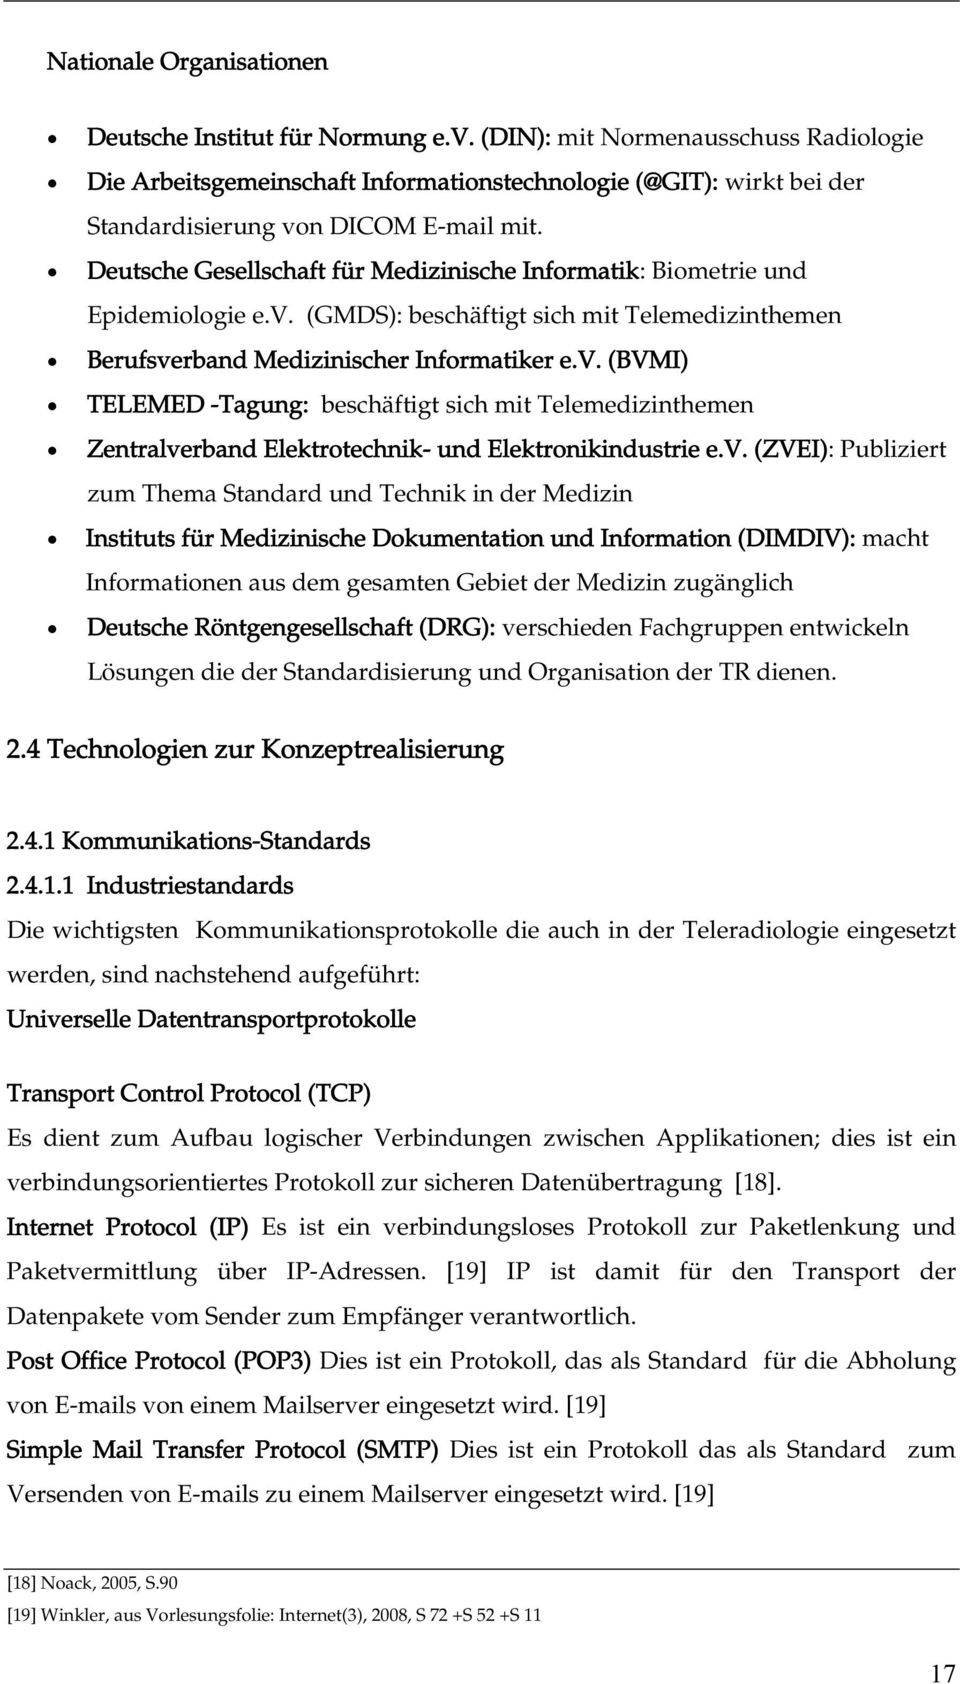 Deutsche Gesellschaft für Medizinische Informatik: Biometrie und Epidemiologie e.v.